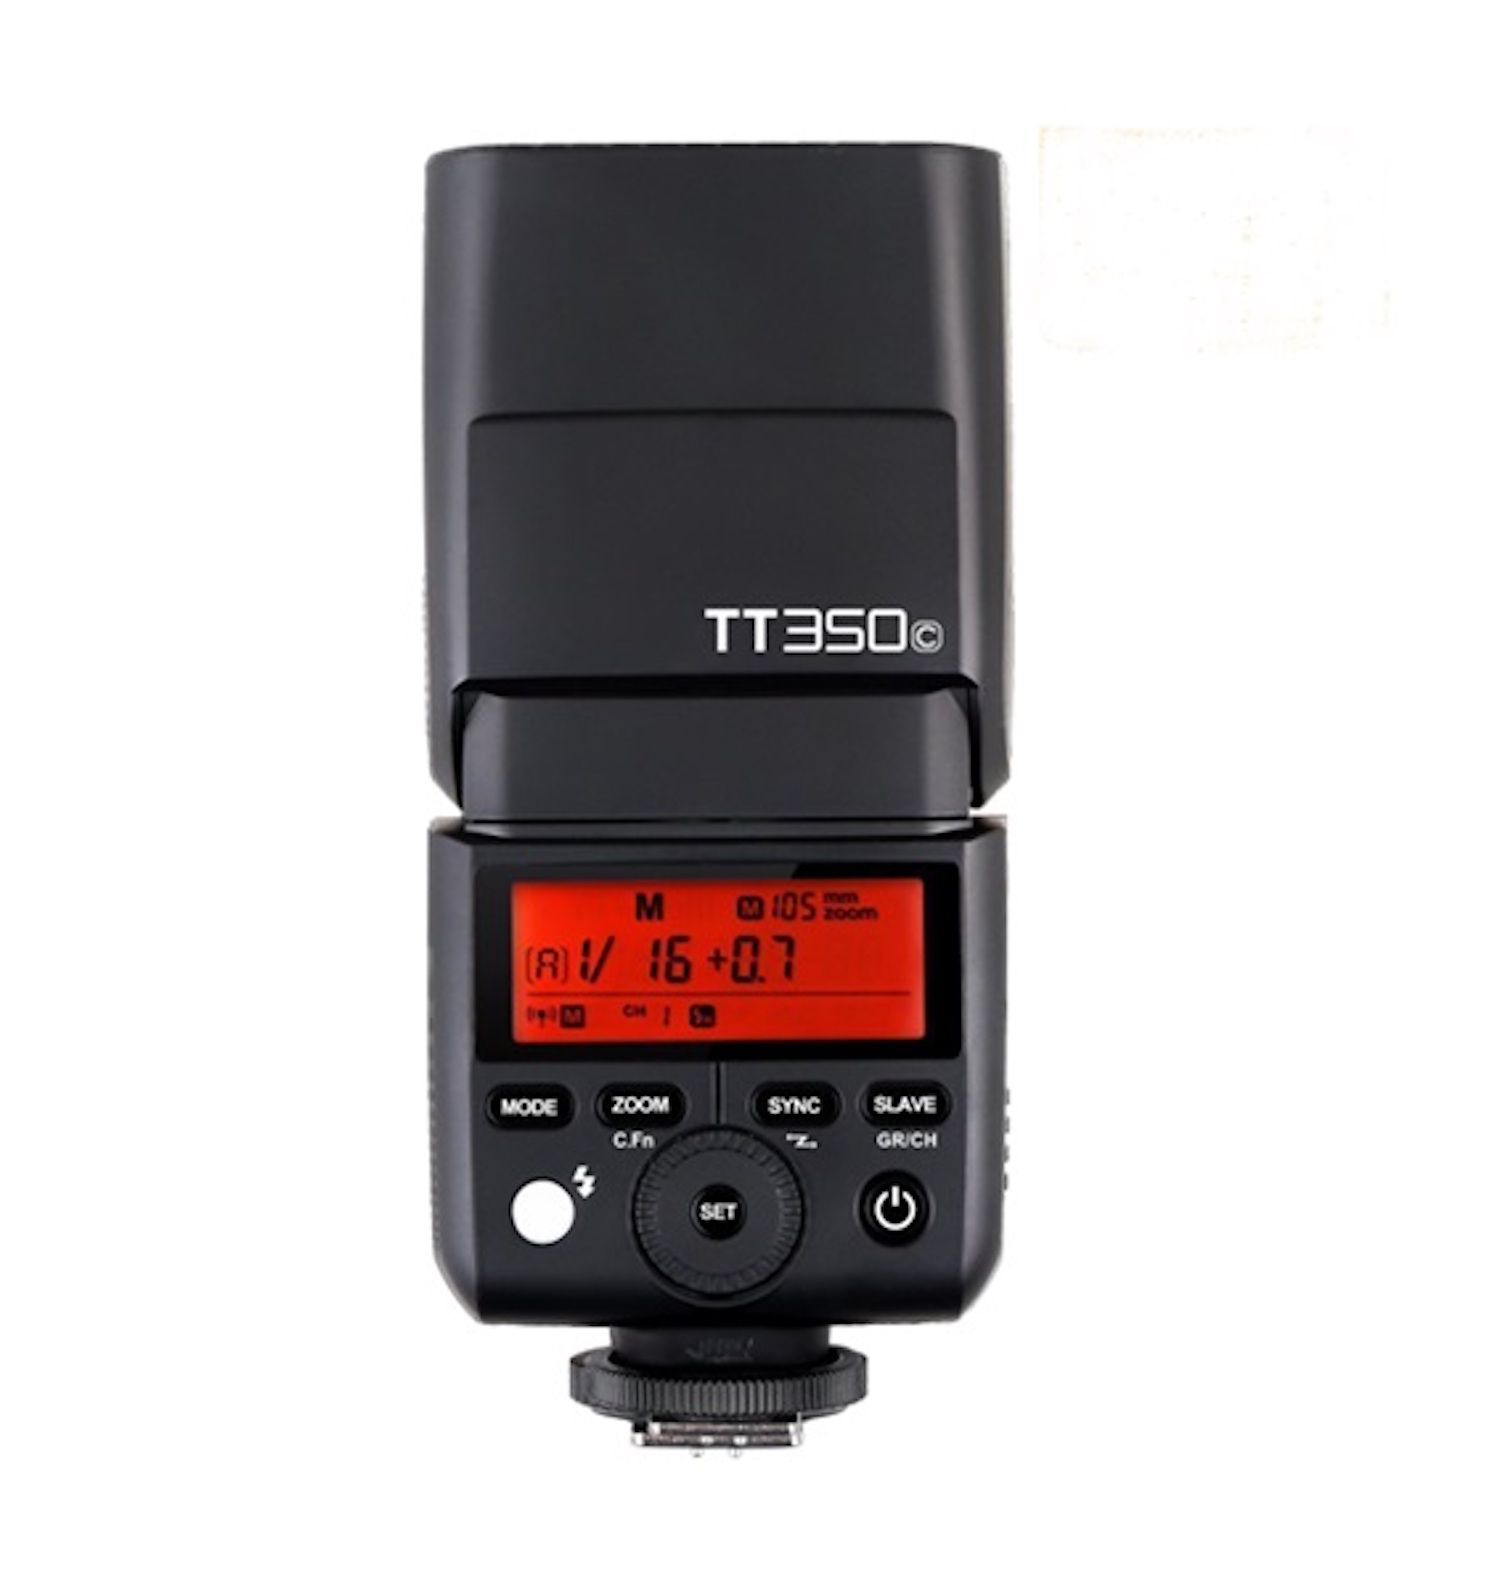 & für Canon HSS TTL Mini for (36, Canon GODOX HSS) Flash Aufsteckblitz TTL 2.4GHz